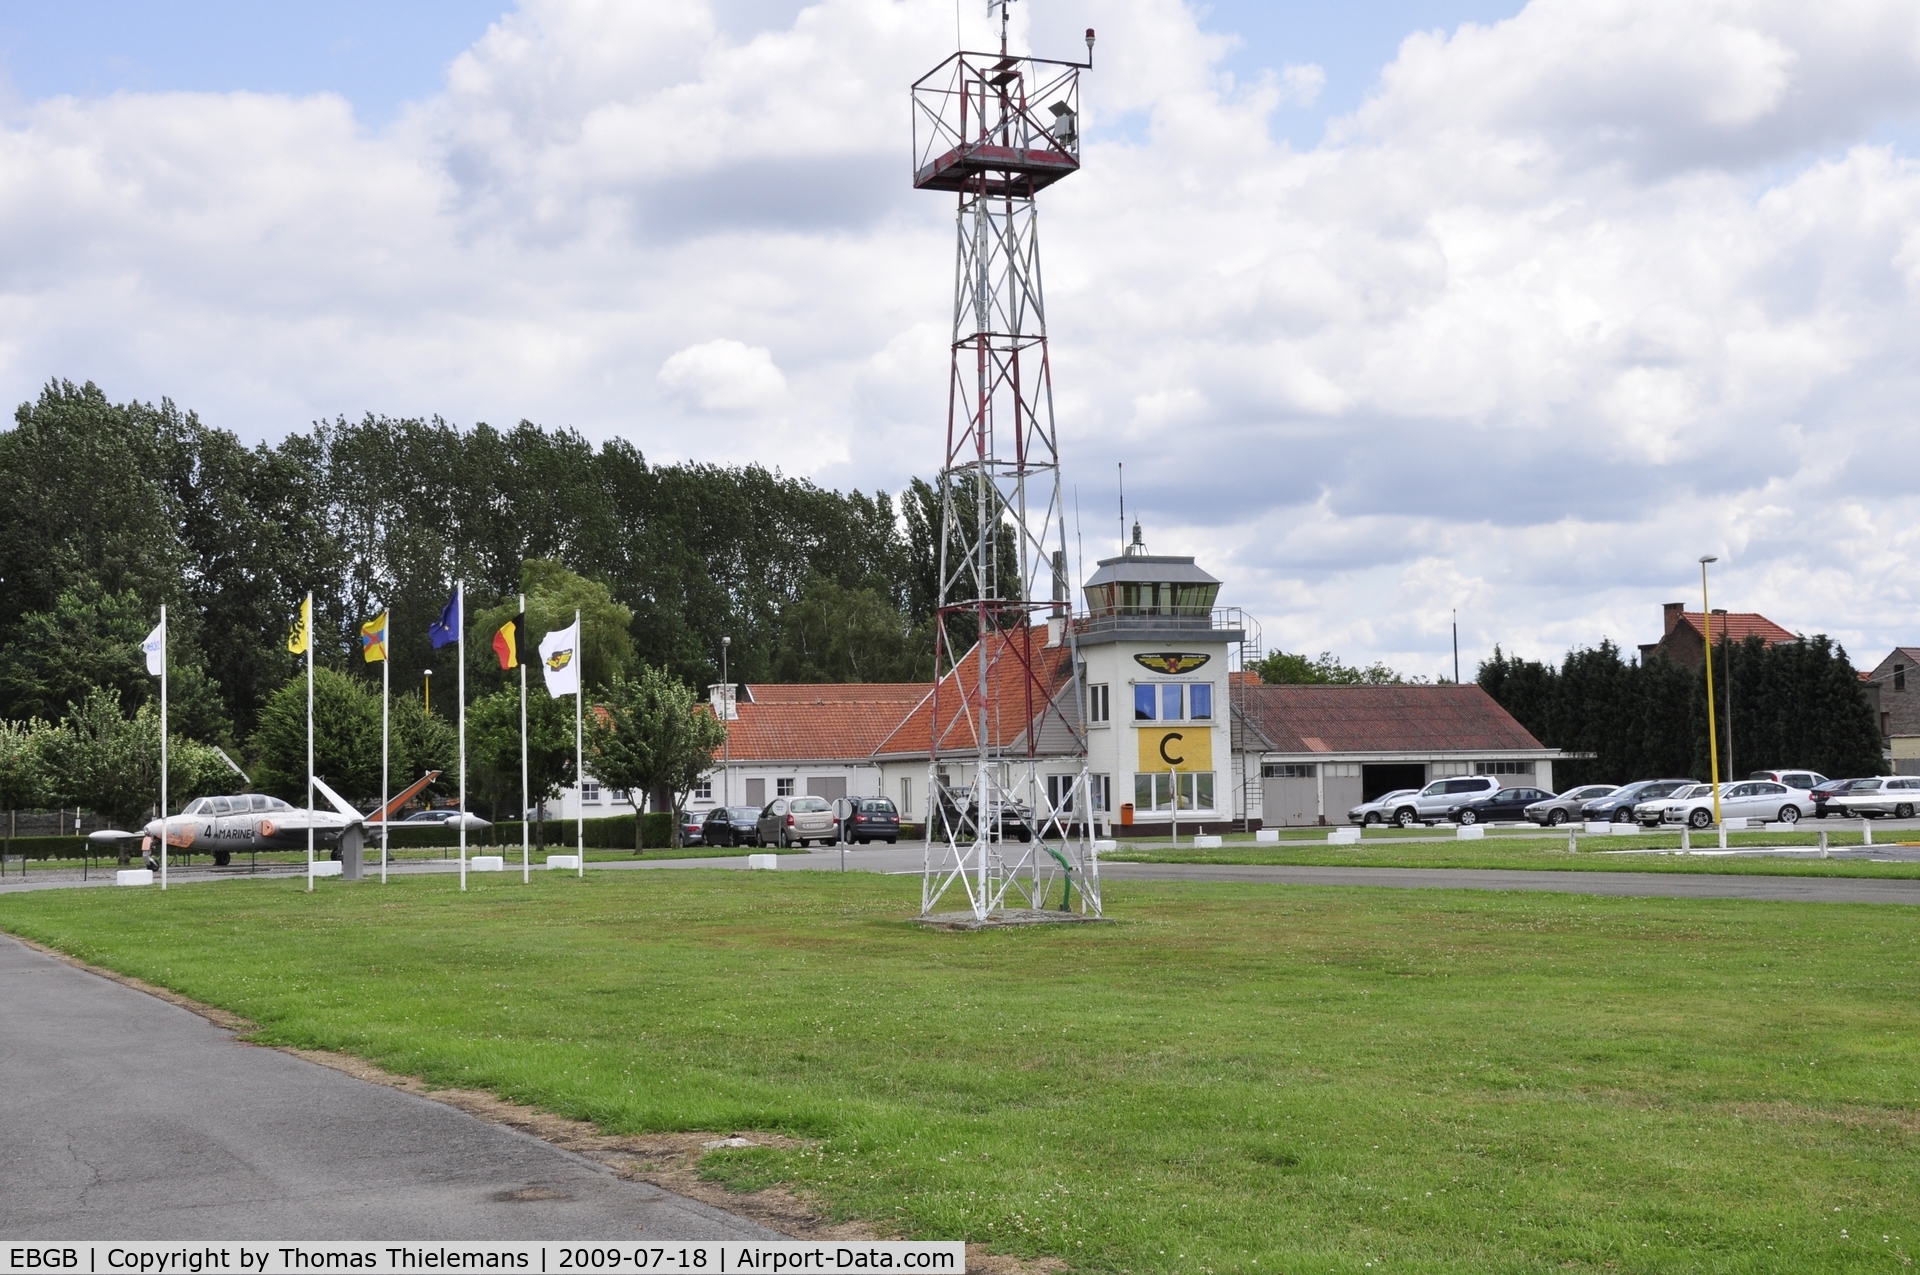 Grimbergen Airfield Airport, Grimbergen Belgium (EBGB) - /